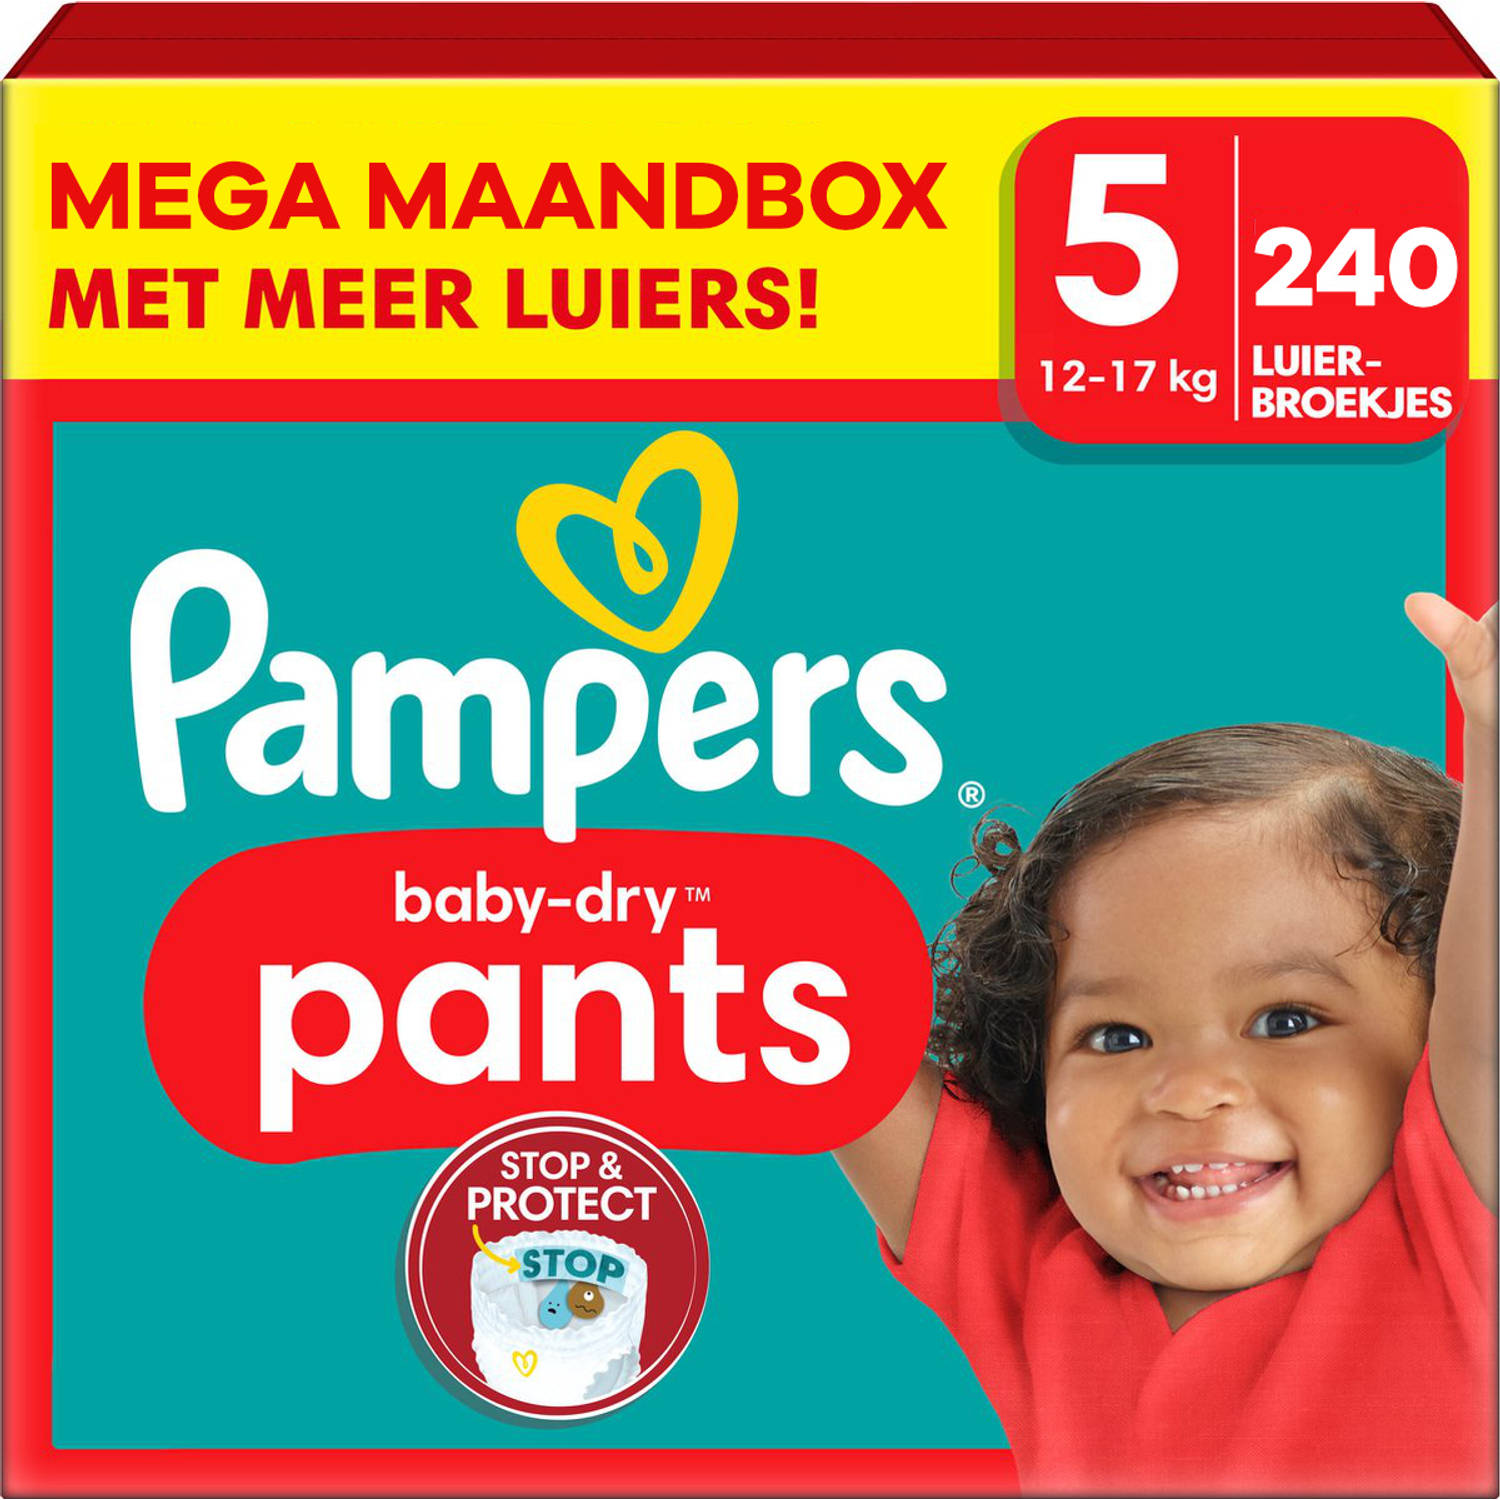 Pampers - Baby Dry Pants - Maat 5 - Mega Maandbox - 240 stuks - 12/17 KG